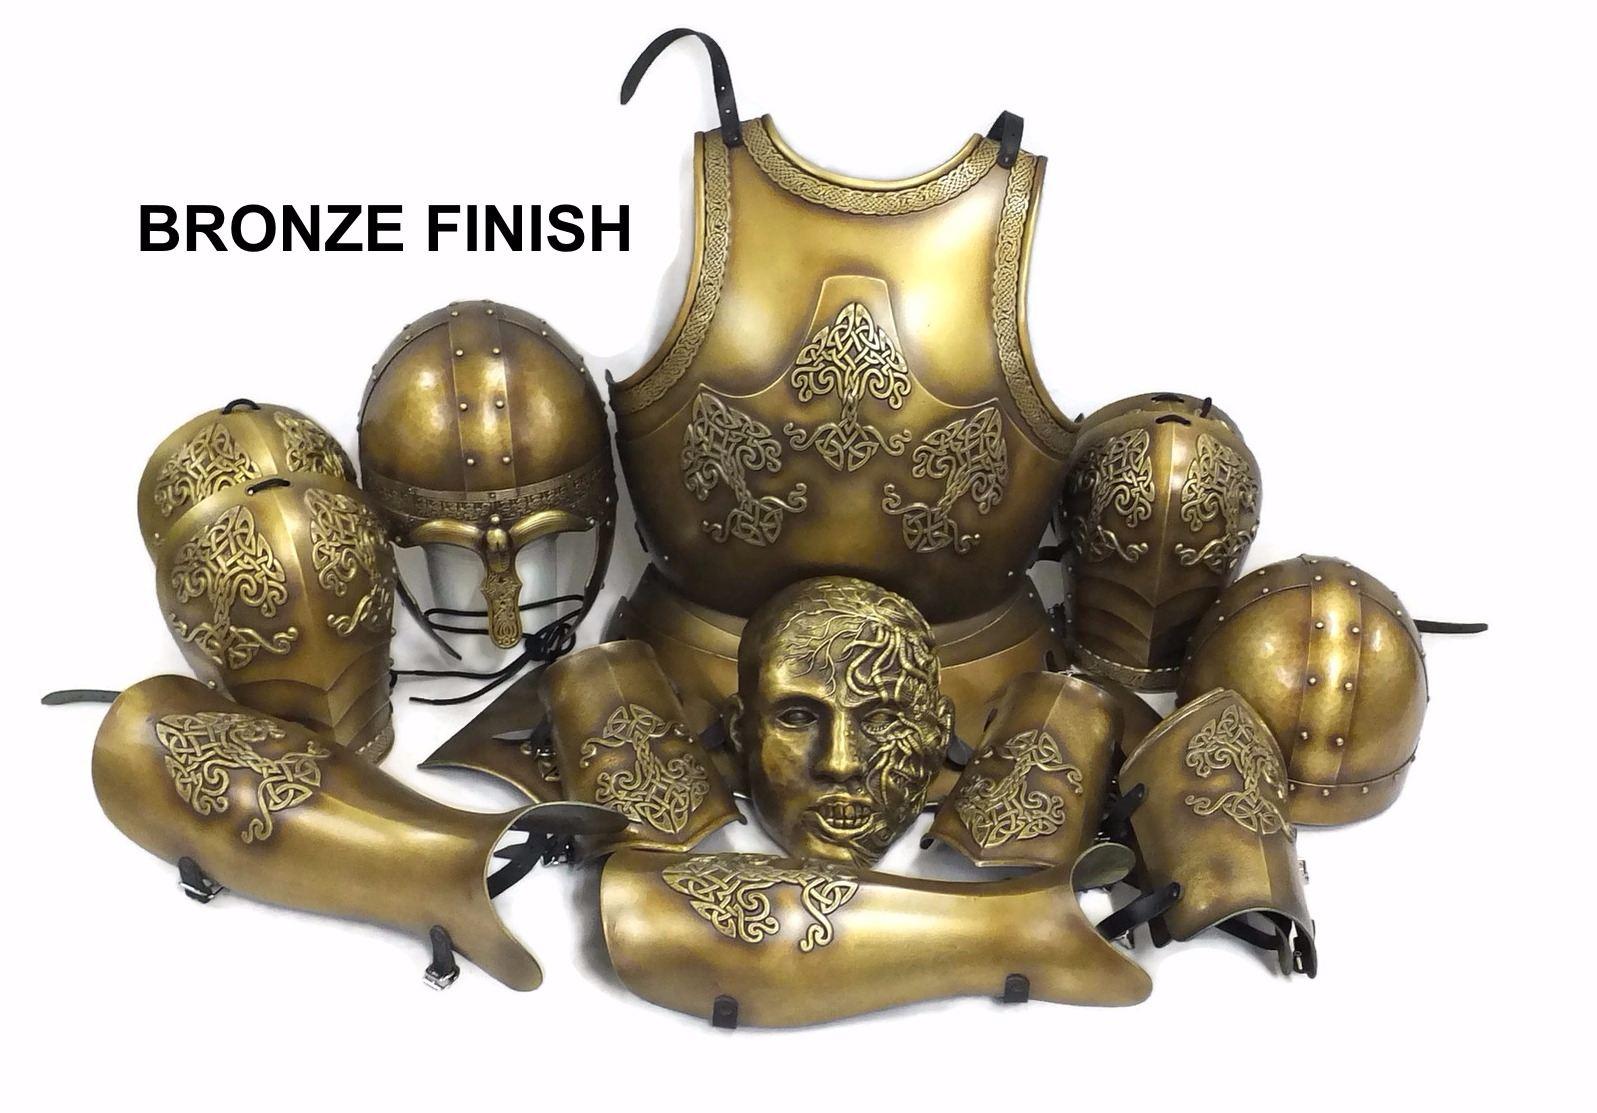 BRONZE - Deep antique bronze colour